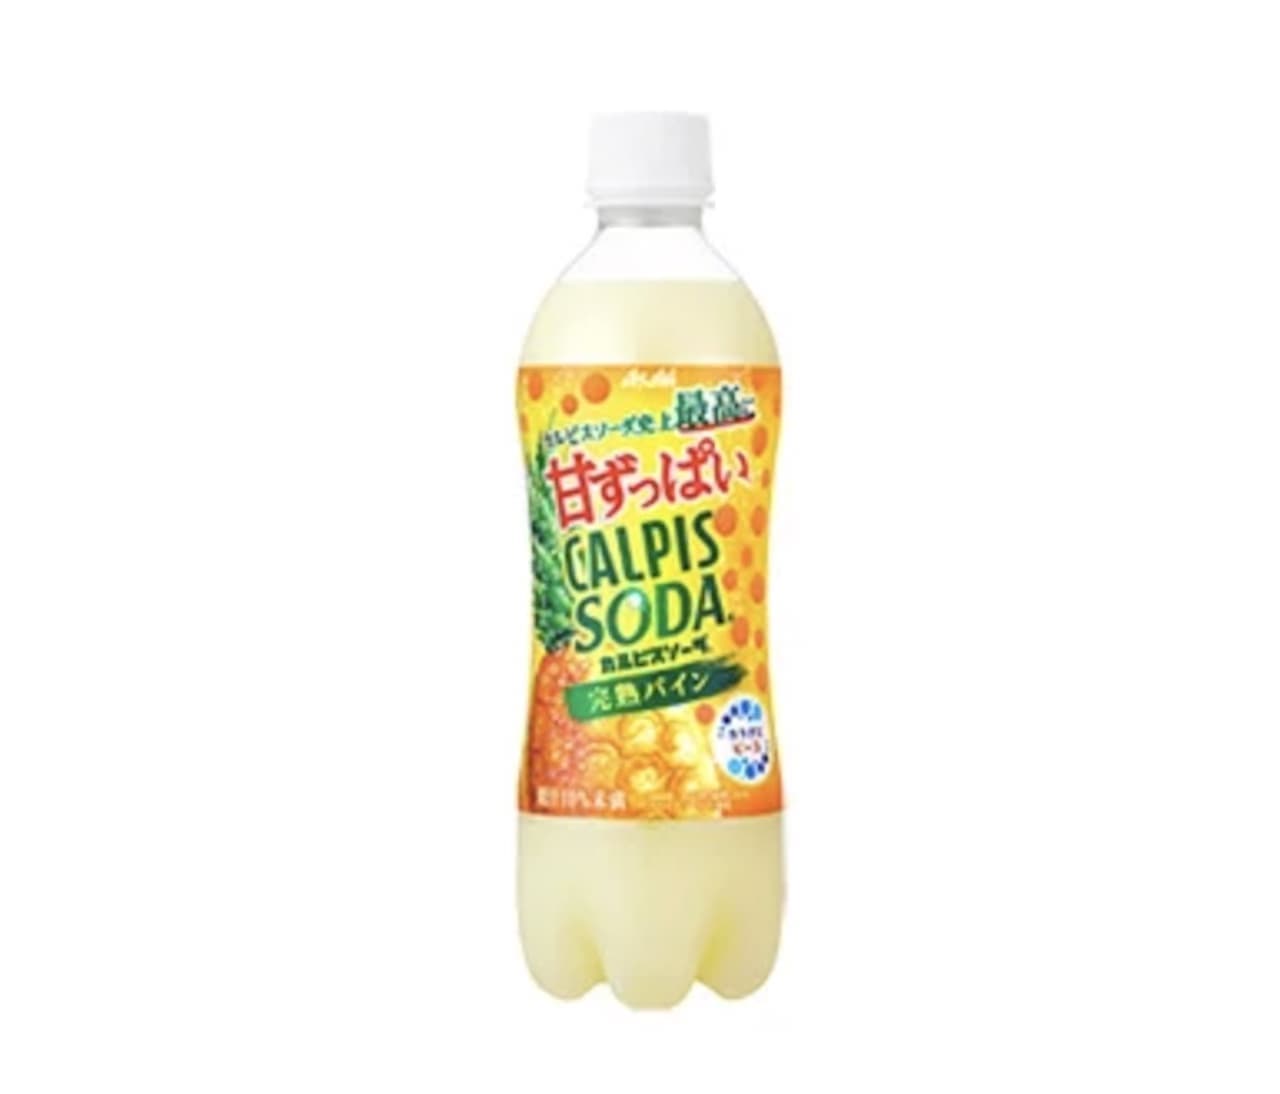 Asahi Soft Drinks "Calpis Soda Fully Ripe Pineapple